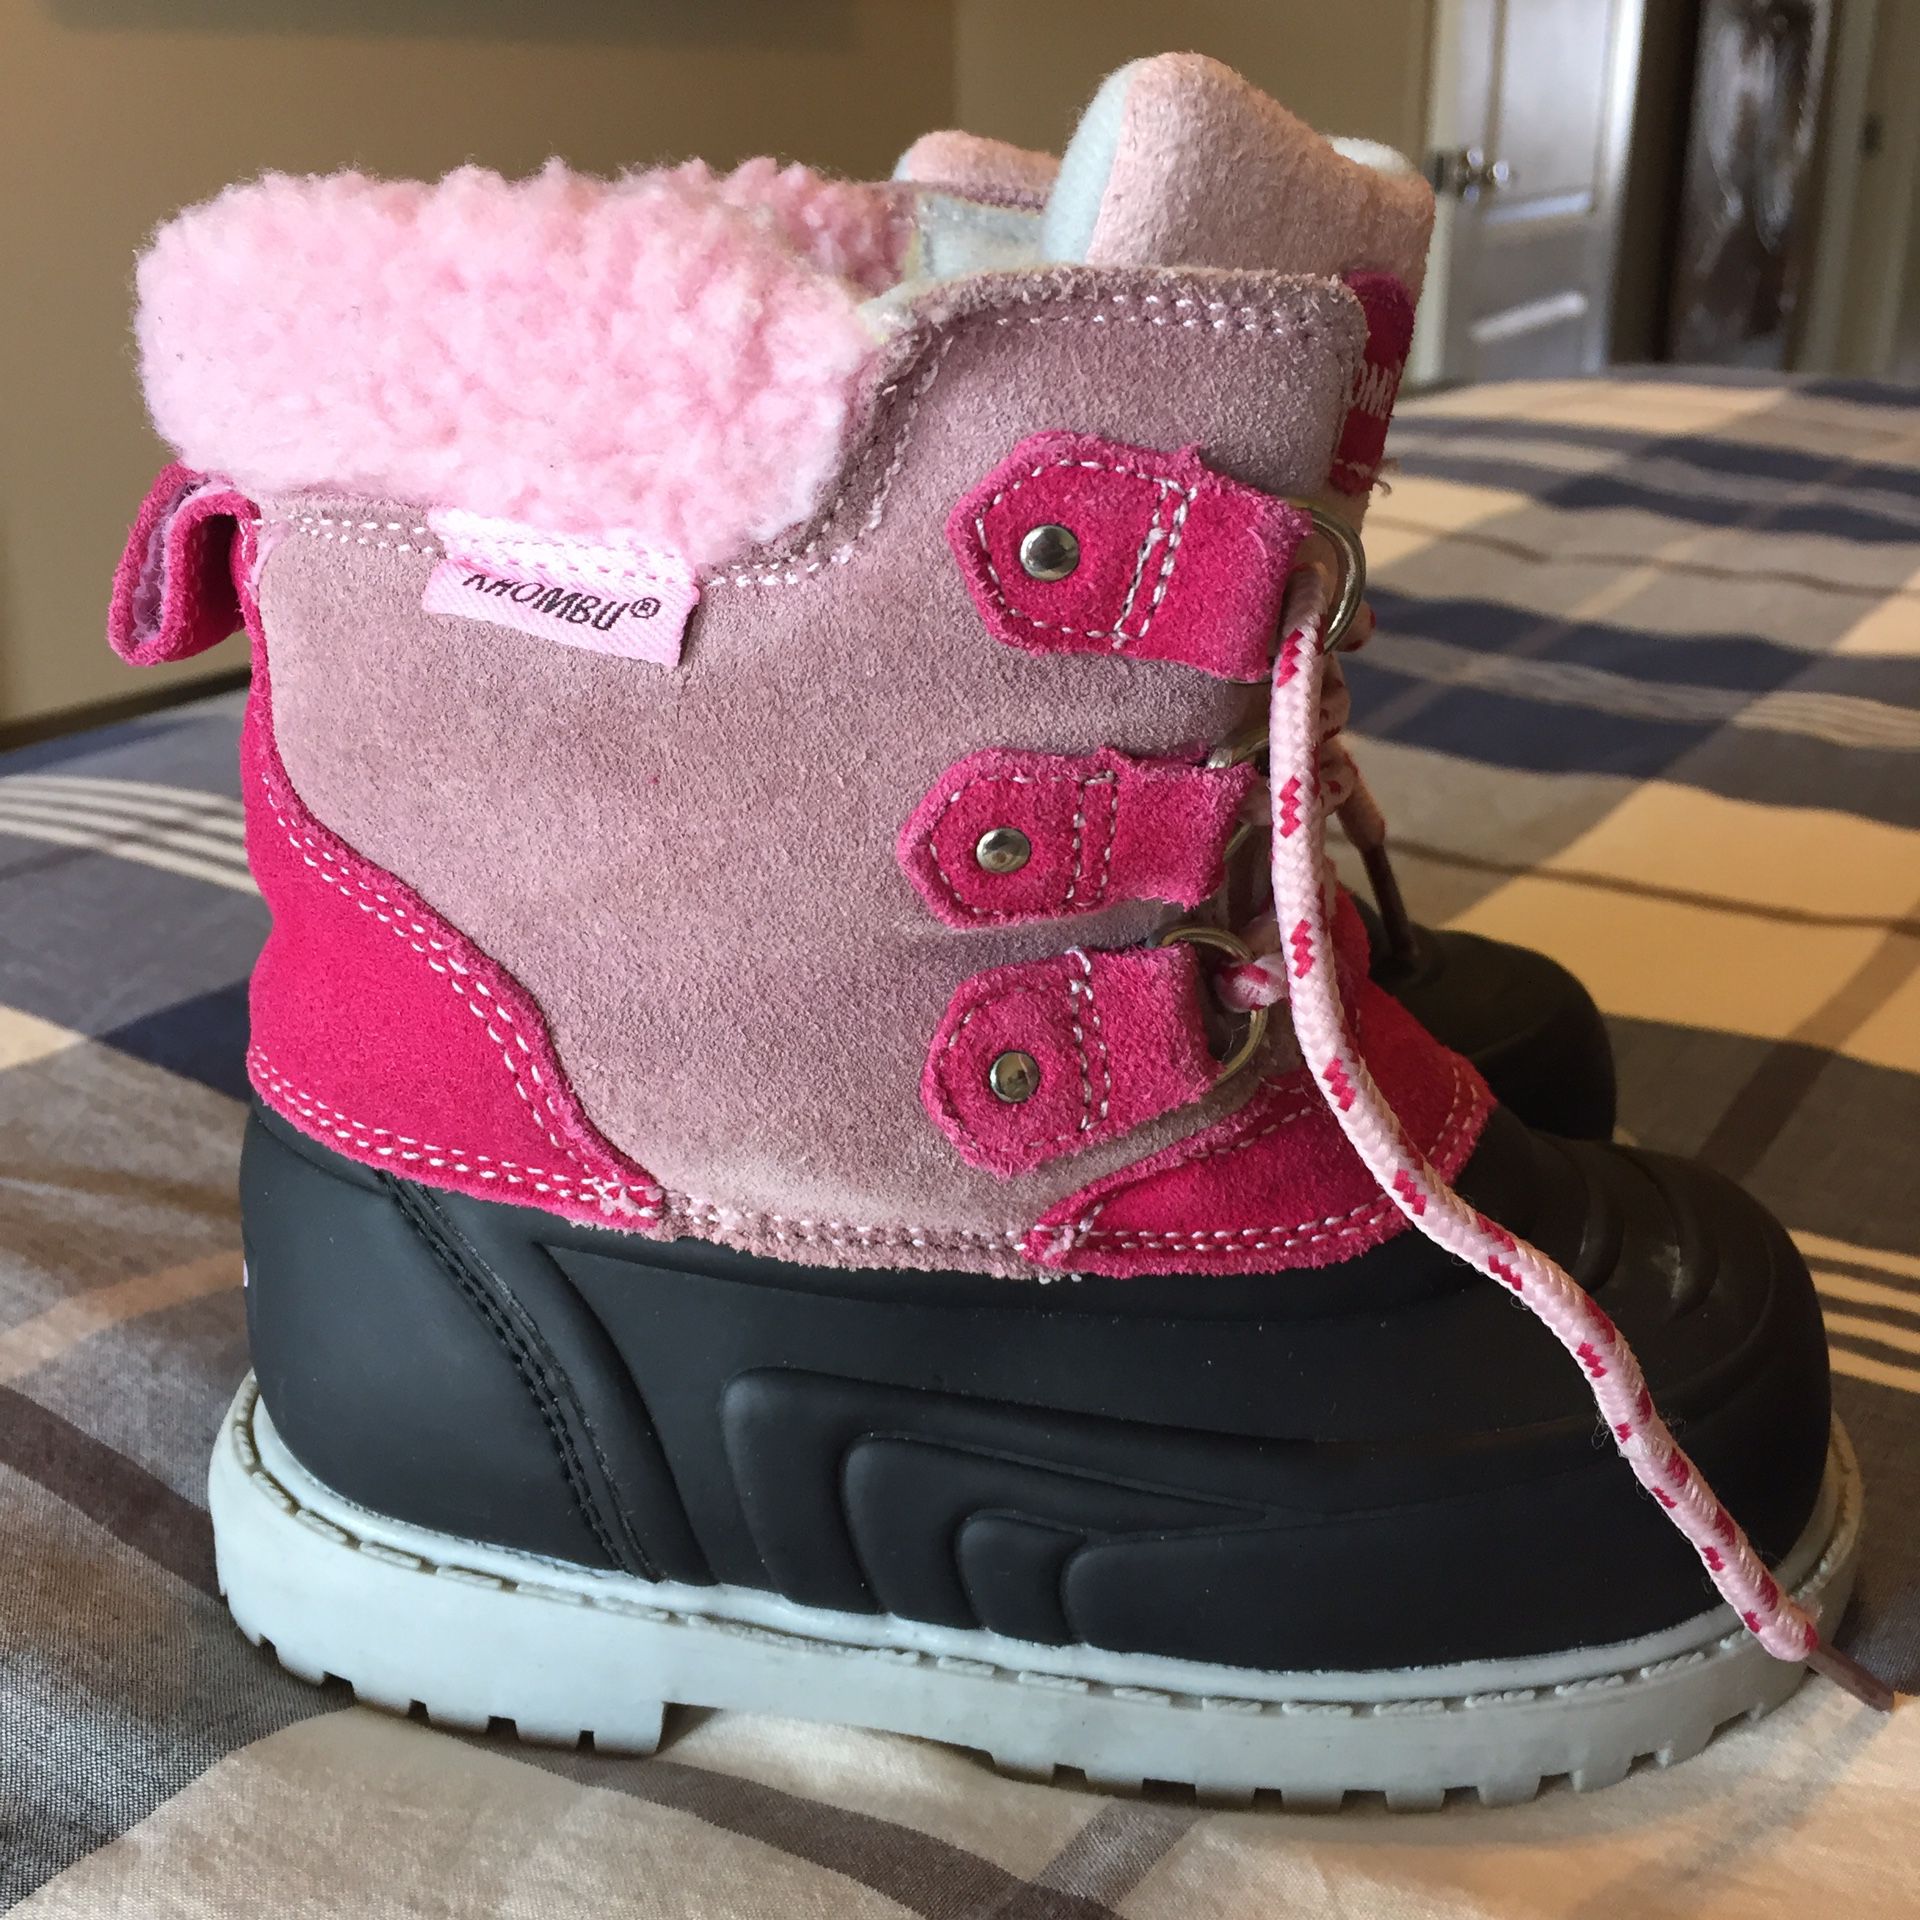 Girls size 9 Khombu Snow boots, warm & waterproof